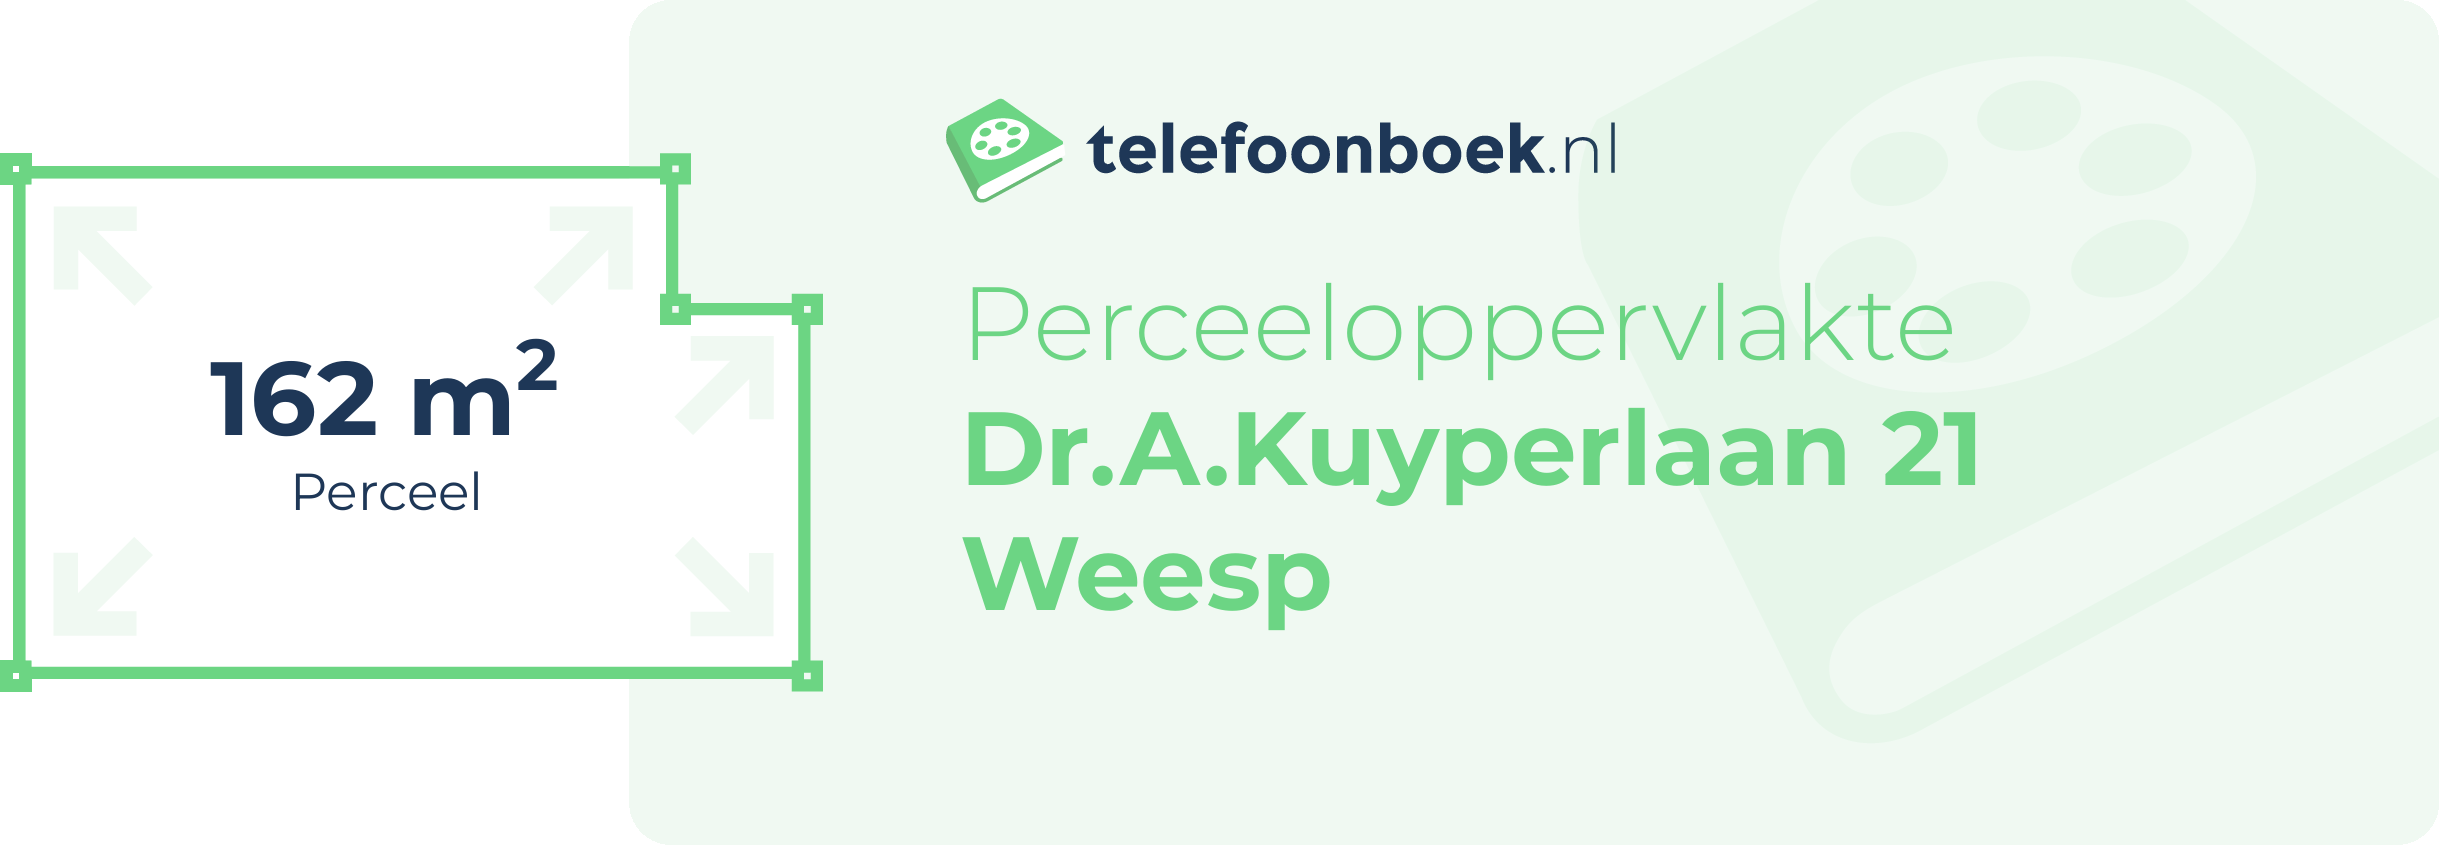 Perceeloppervlakte Dr.A.Kuyperlaan 21 Weesp